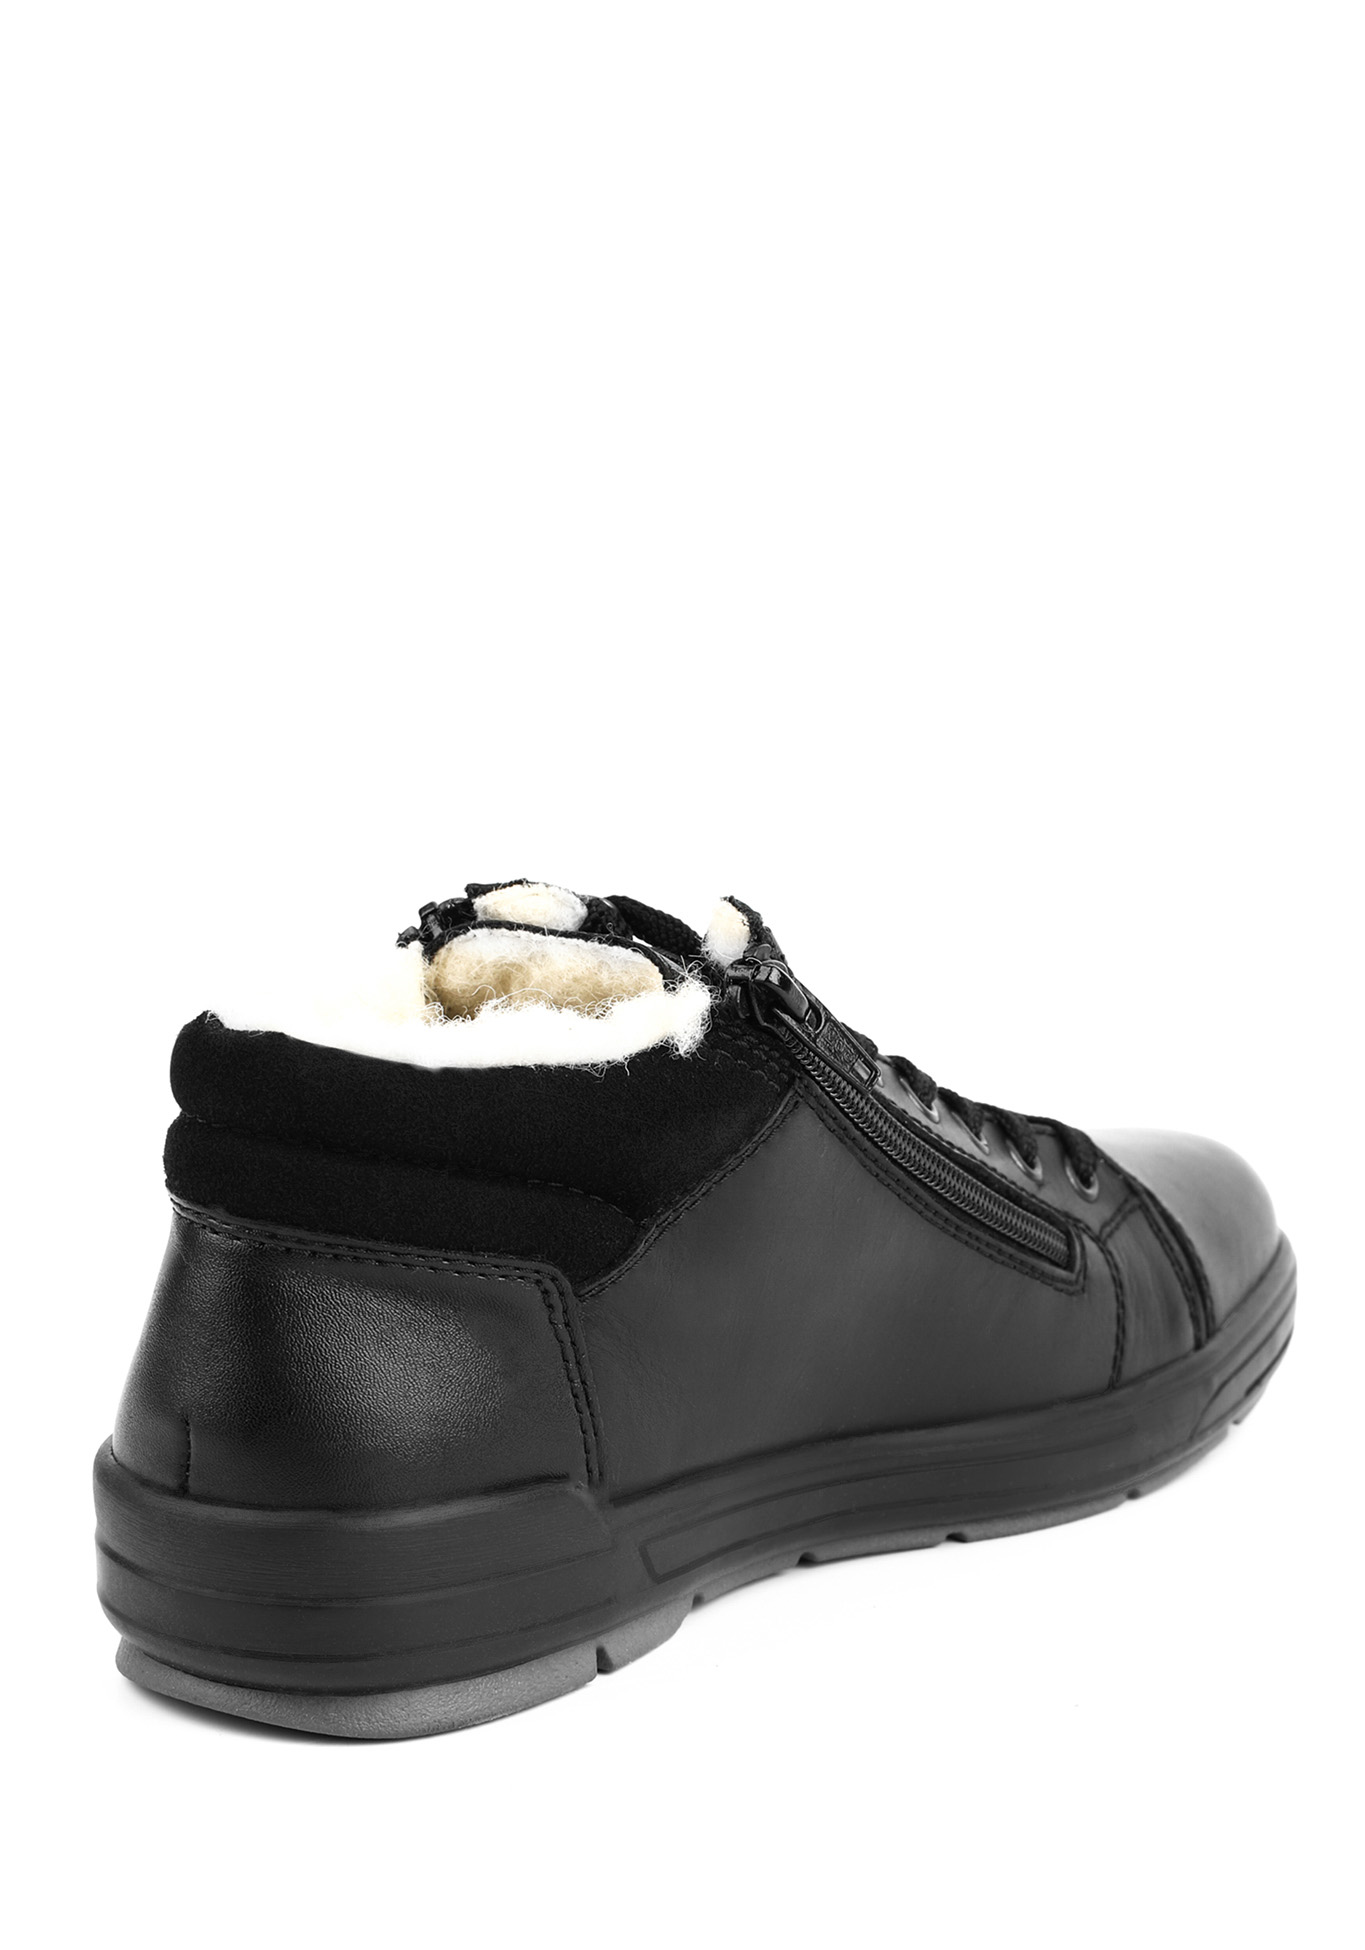 Ботинки мужские "Франческо" Rieker, размер 45, цвет черный - фото 3